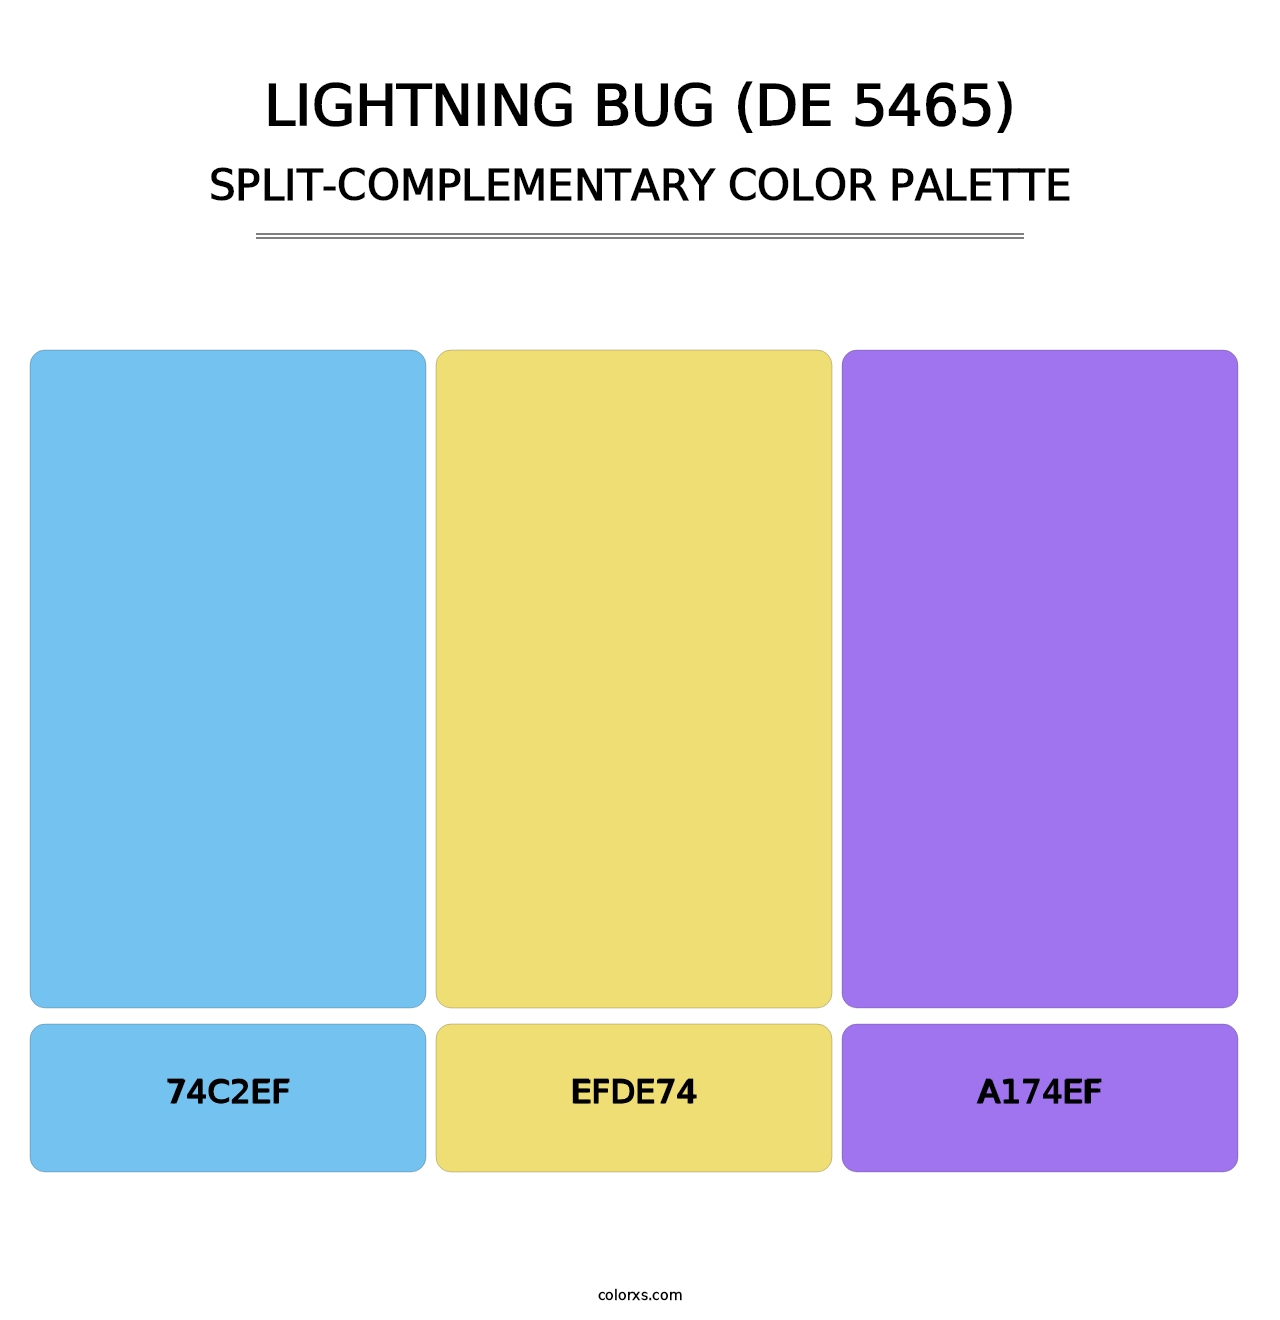 Lightning Bug (DE 5465) - Split-Complementary Color Palette